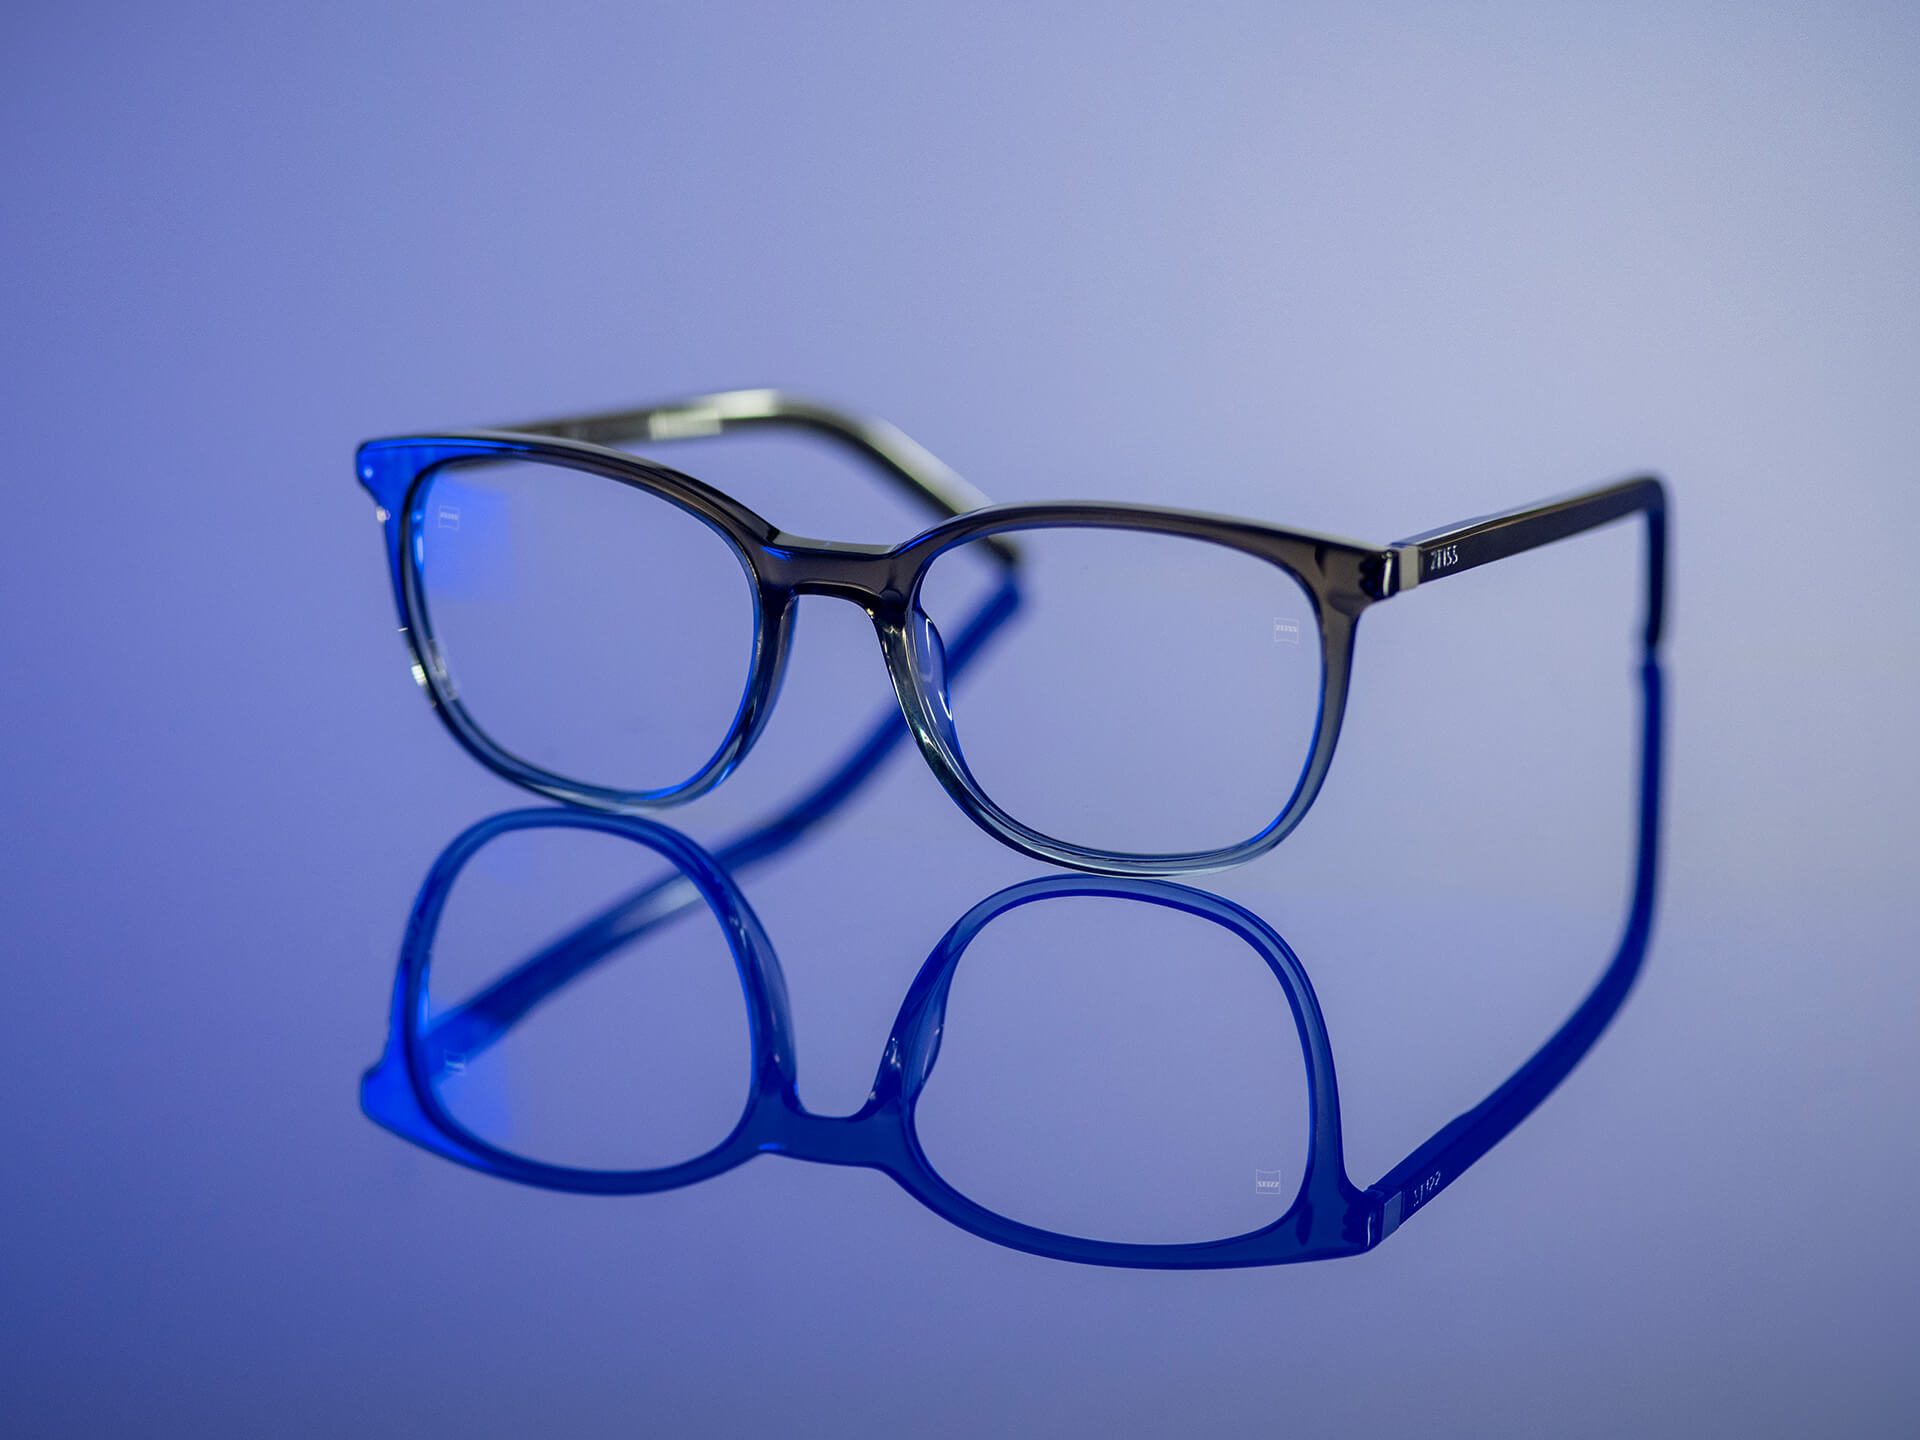 Óculos que podem ser vistos em uma luz azulada e têm lentes ZEISS com material BlueGuard. É possível ver somente um reflexo azulado bem atenuado nas lentes.